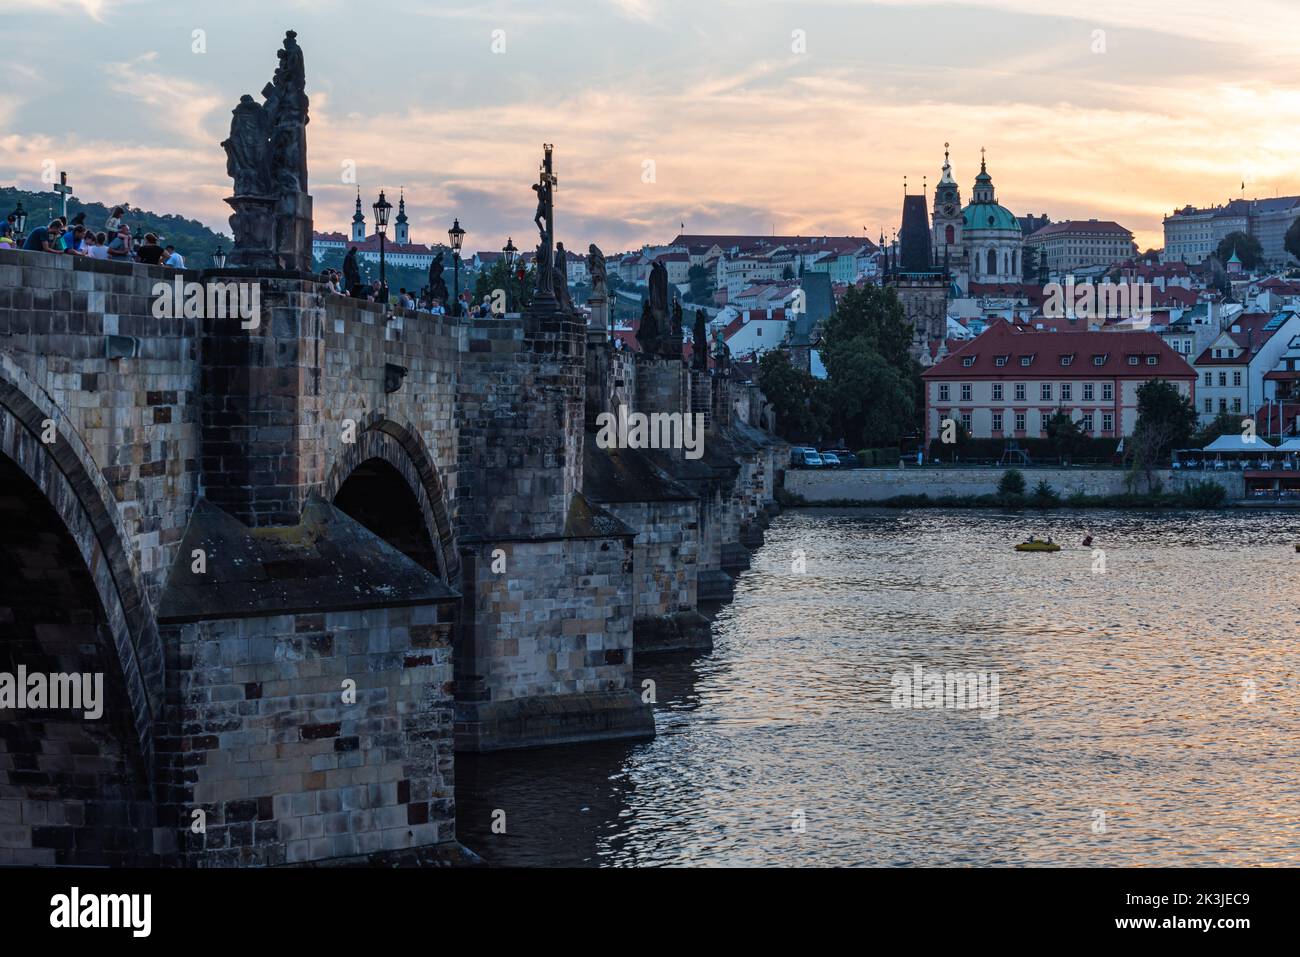 Praga - Repubblica Ceca - 08 01 2020 turisti in abiti estivi a piedi sul ponte Carlo durante una notte d'estate con un cielo colorato Foto Stock